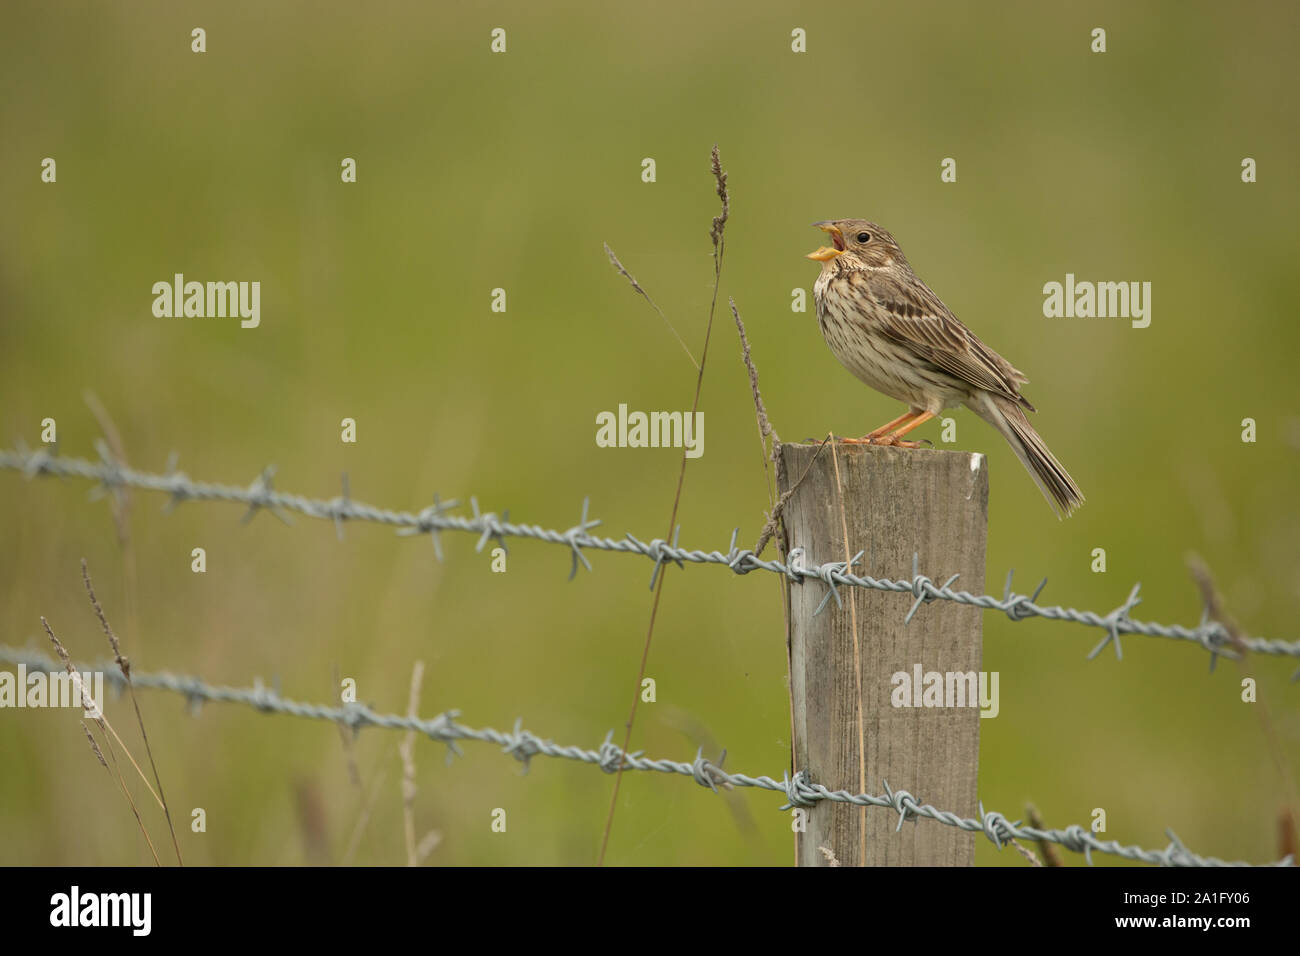 Bruant proyer mâle chantant sur un piquet de clôture. Un lieu typique pour voir cette une fois oiseaux des champs communs, avec sa caractéristique jangling appel. Banque D'Images